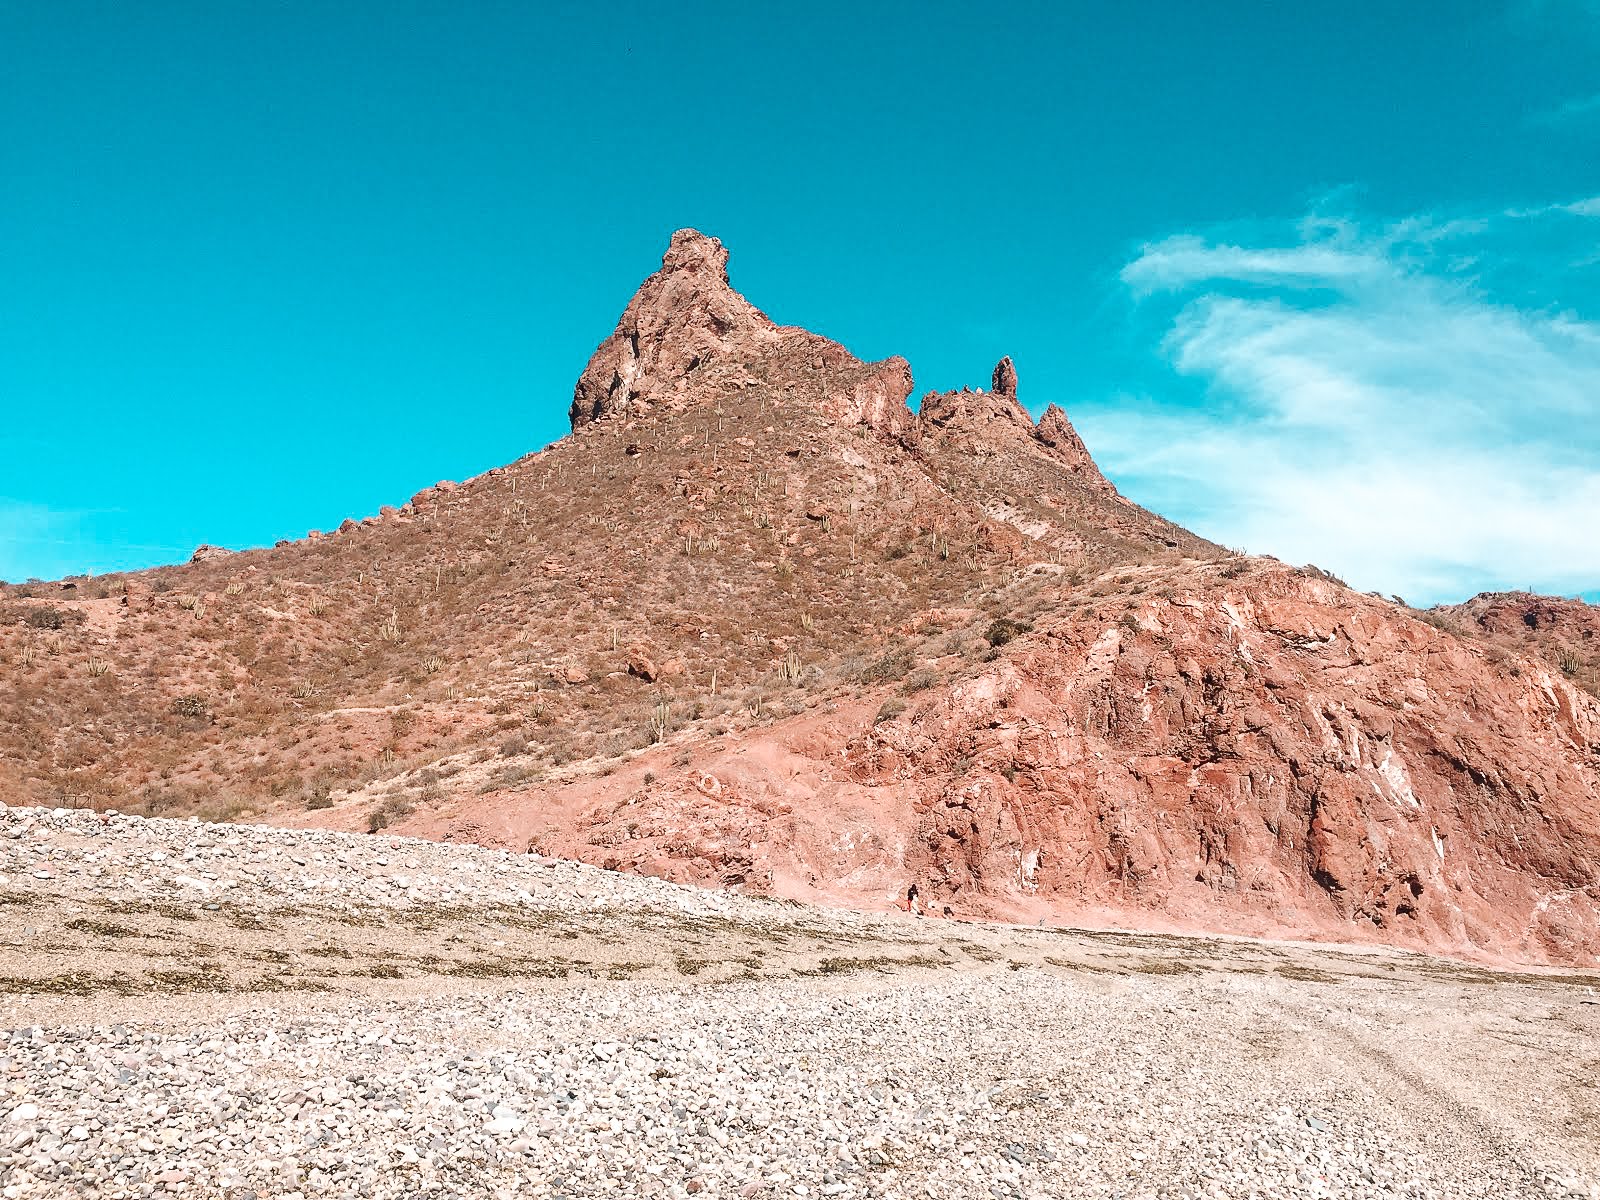 la playa piedras pintas dans la ville de san carlos au mexique sur la photo on voit le fameux rocher de couleur rouge qui est appelé Cerro Tetakawi